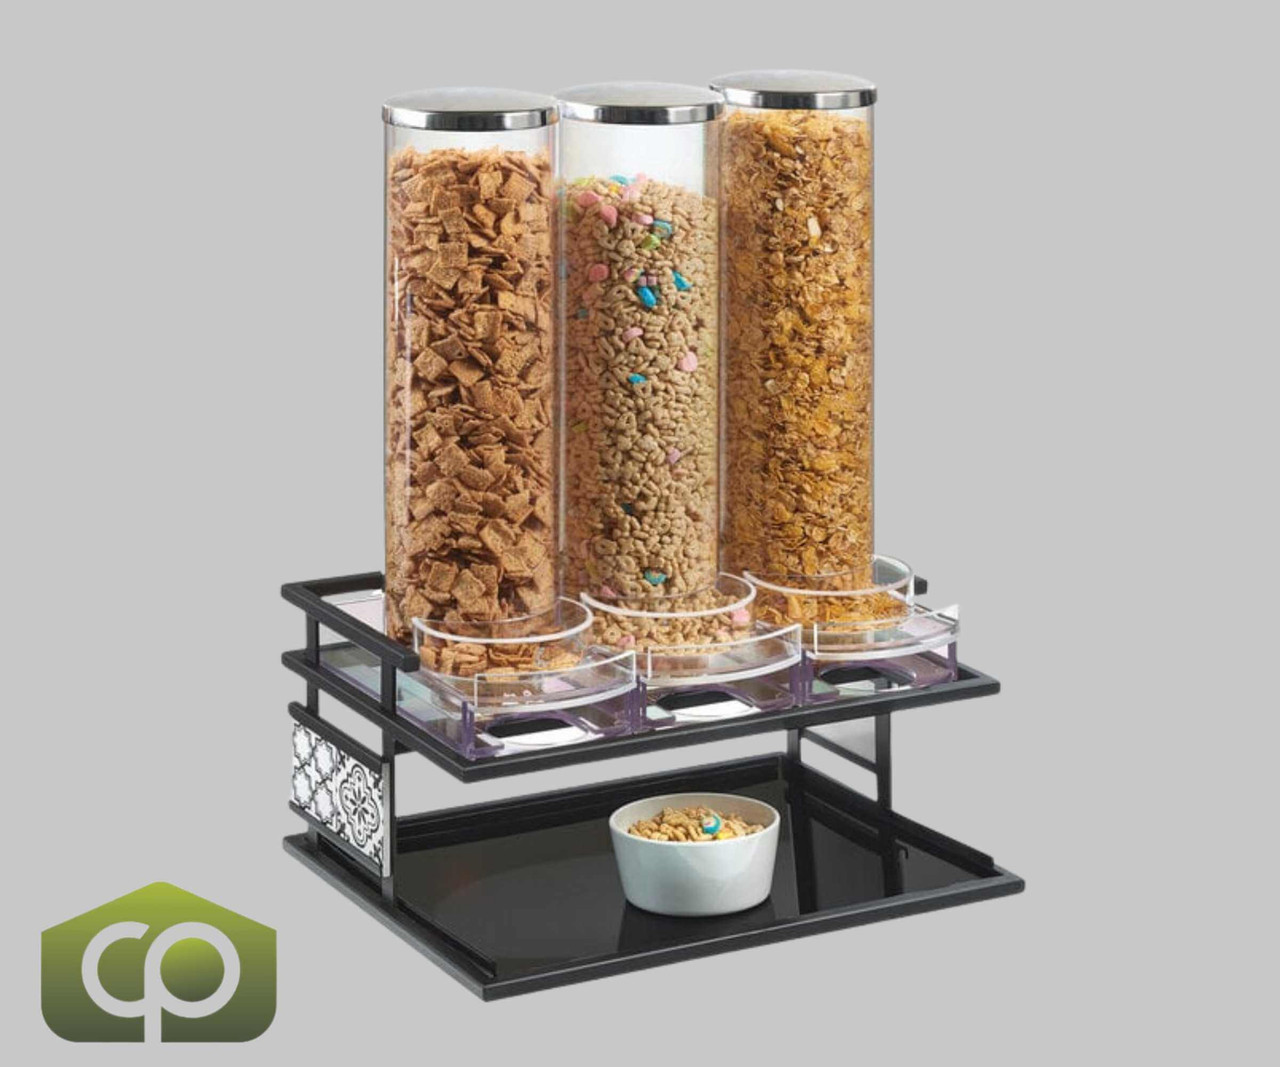 Cal-Mil Granada 5 Liter Triple Canister Cereal Dispenser - Industrial Black Design